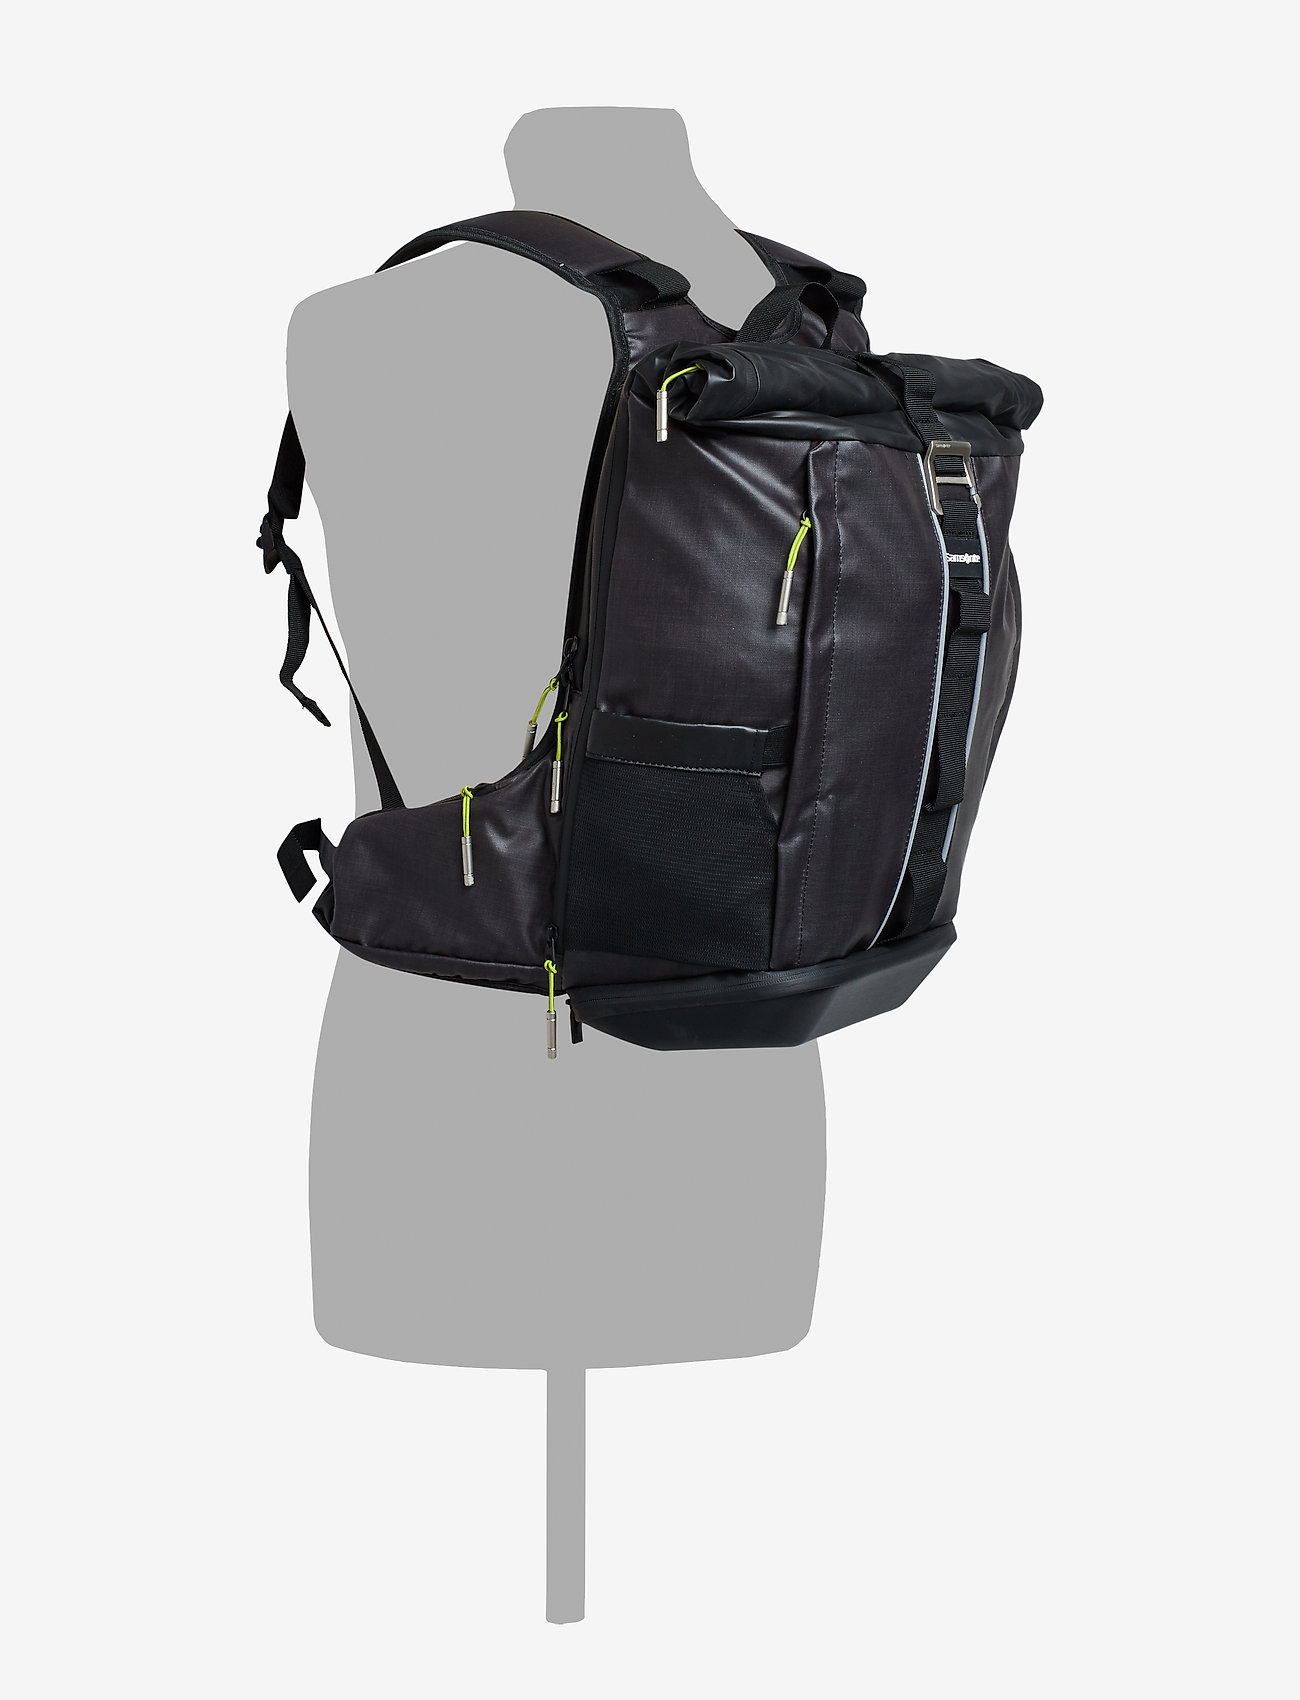 2wm Lp Backpack 15,6" (Black) - Samsonite OFmOkB